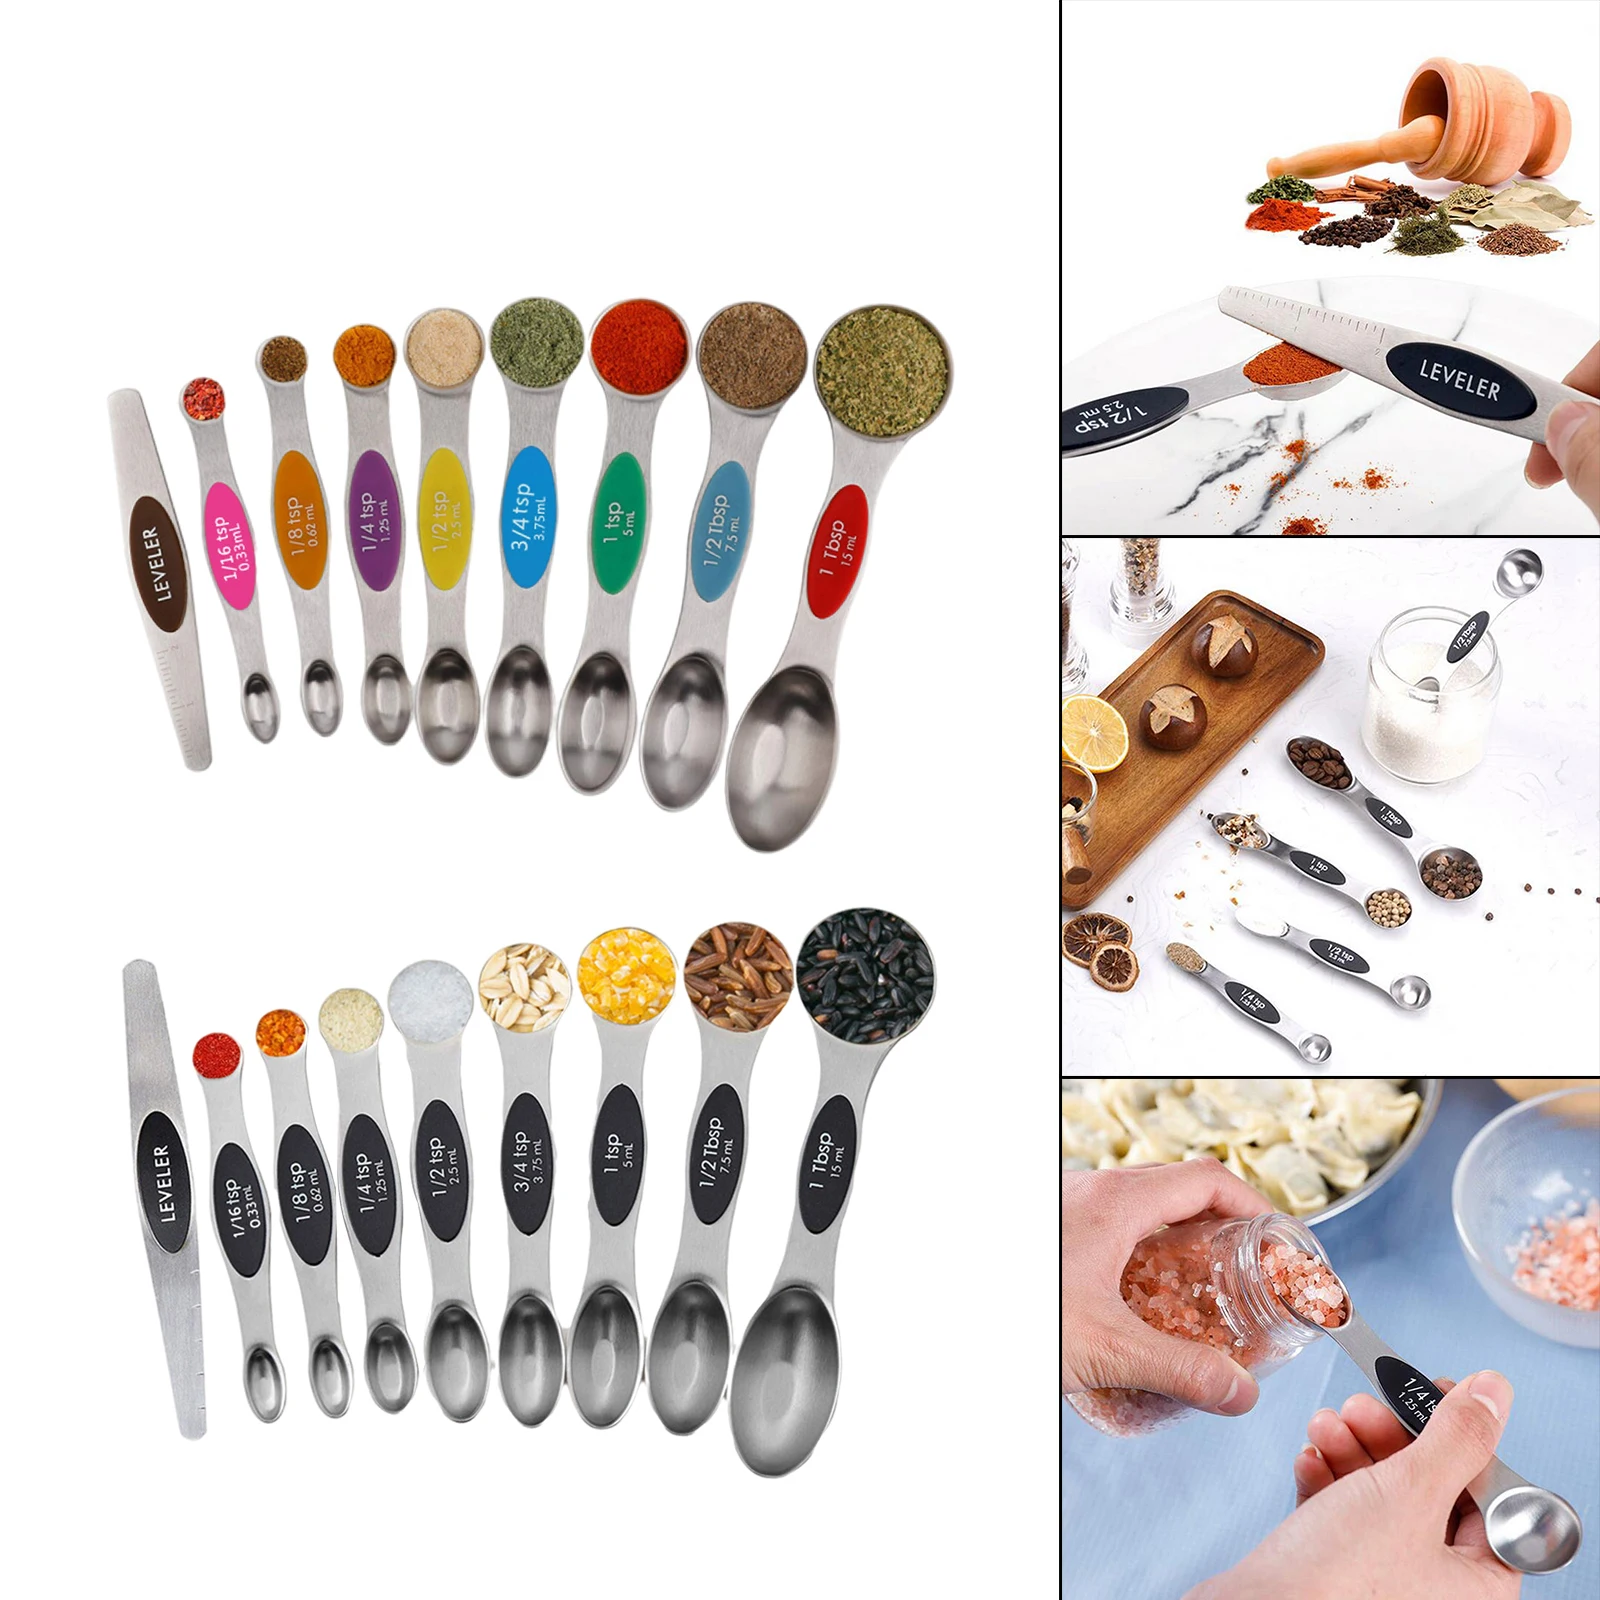 https://ae01.alicdn.com/kf/Hcf8aa6397f434c45b43d5677a8f90a55C/9-PCS-Magnetic-Measuring-Spoons-Stainless-Steel-Dual-Sided-Teaspoon-for-Sugar-Salt-Measuring-Tools.jpg